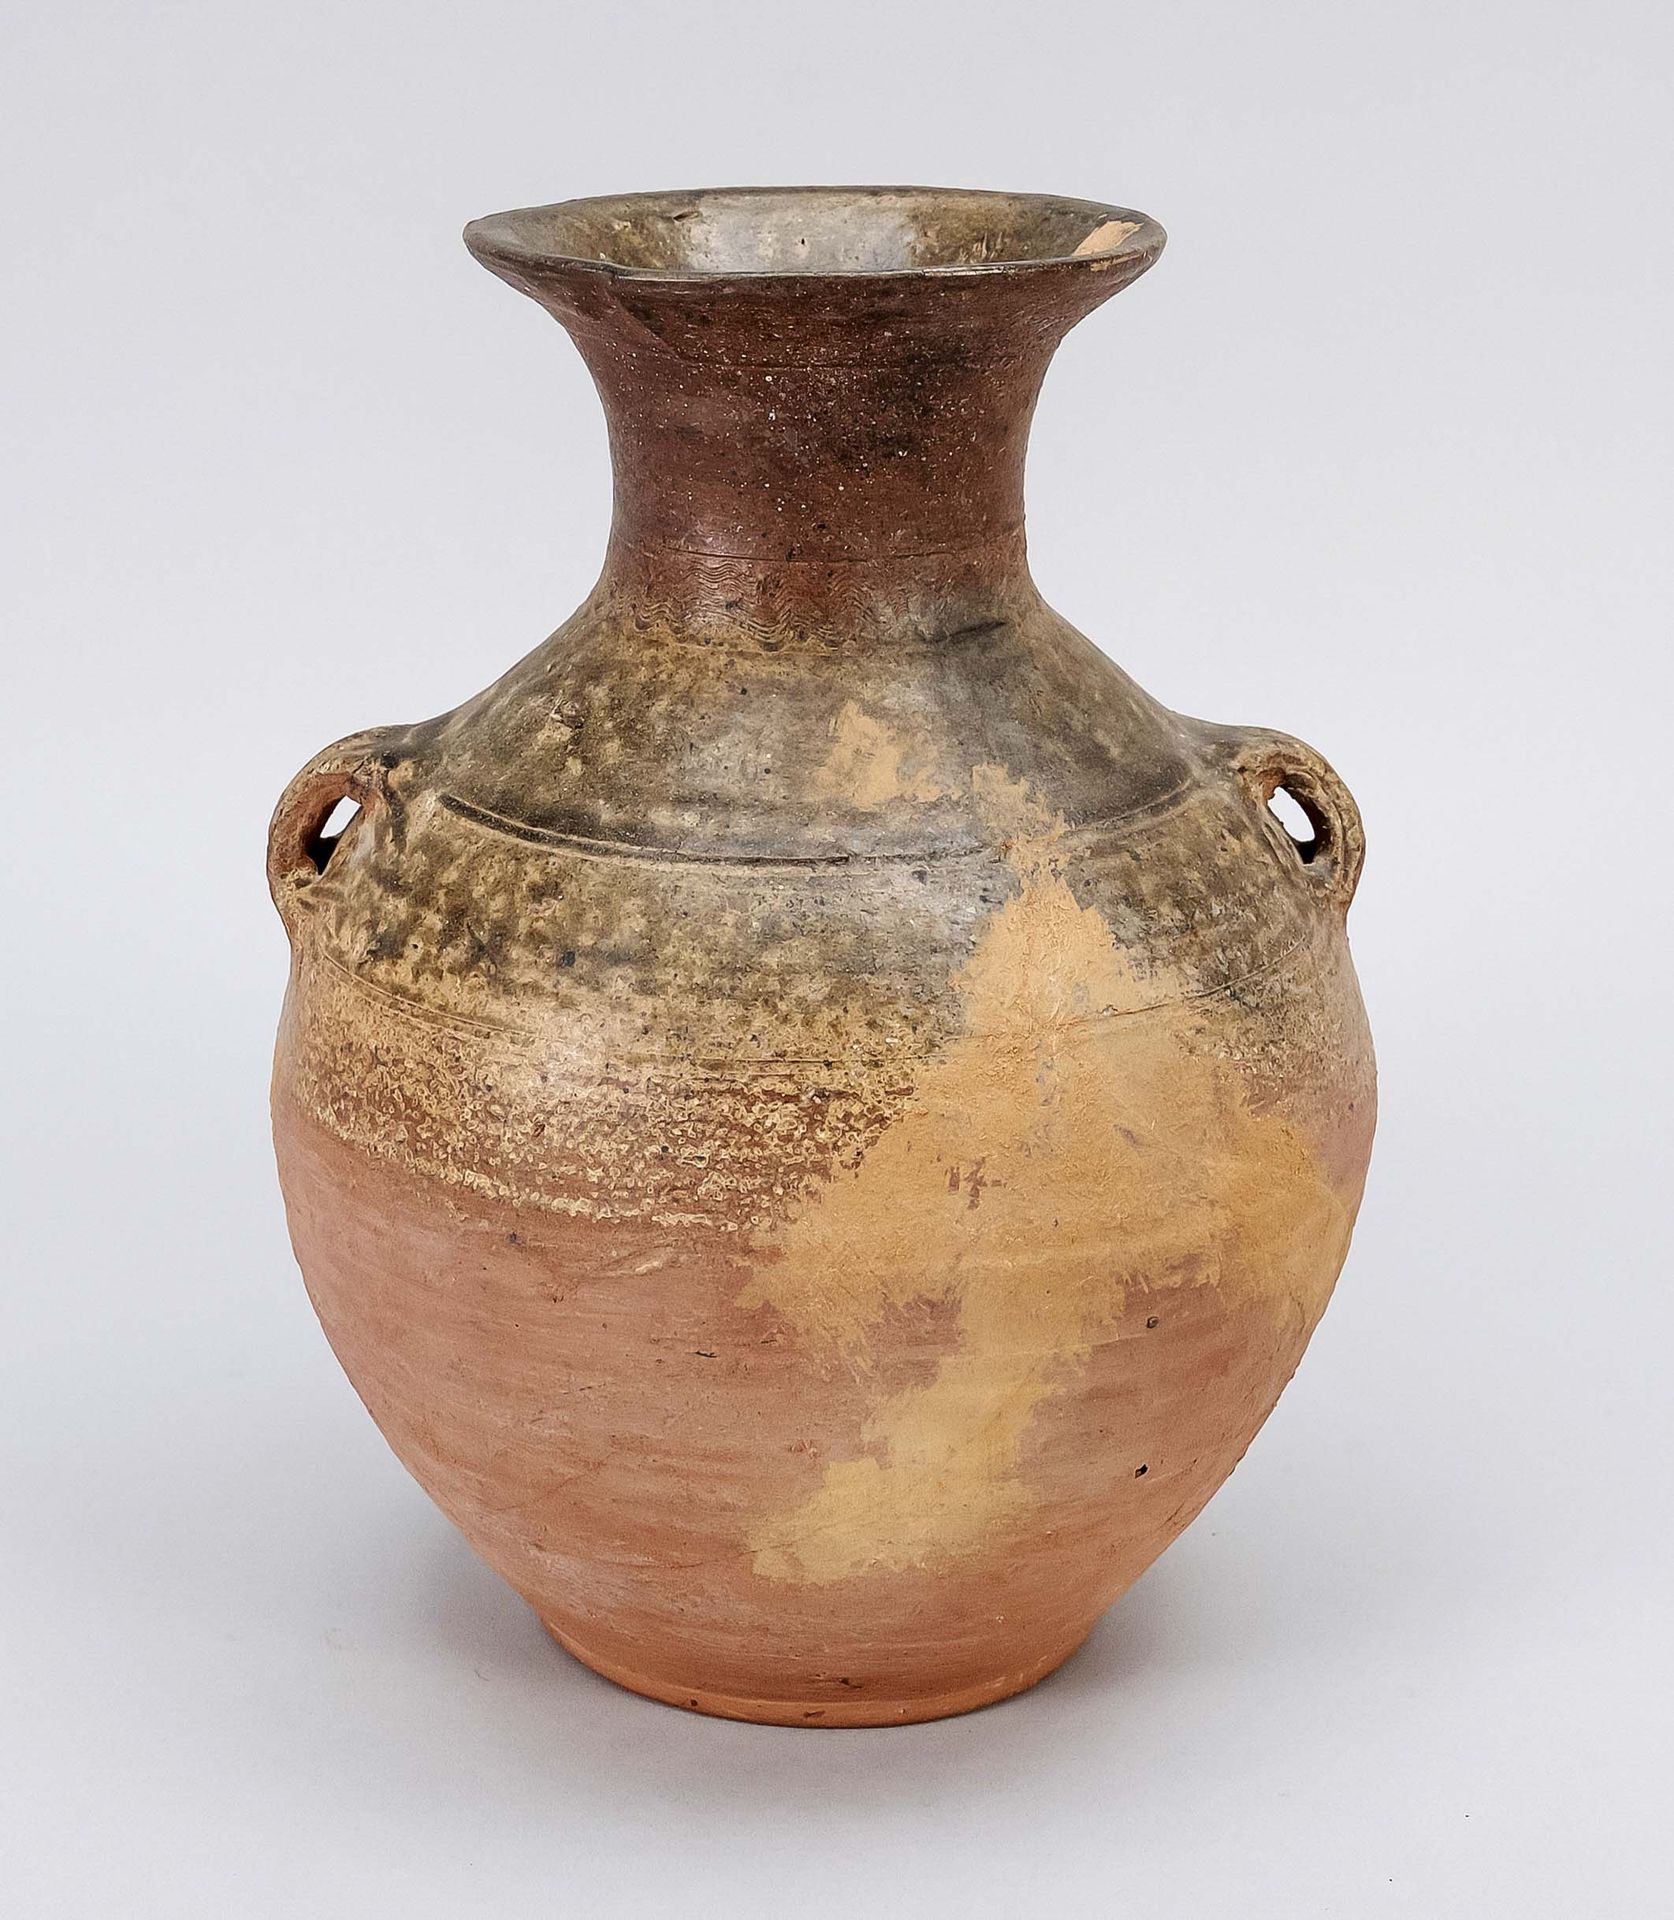 Null Bauchige Vase, China, wohl 3.-6. Jh. N. Chr., bauchige Vase mit auskragende&hellip;